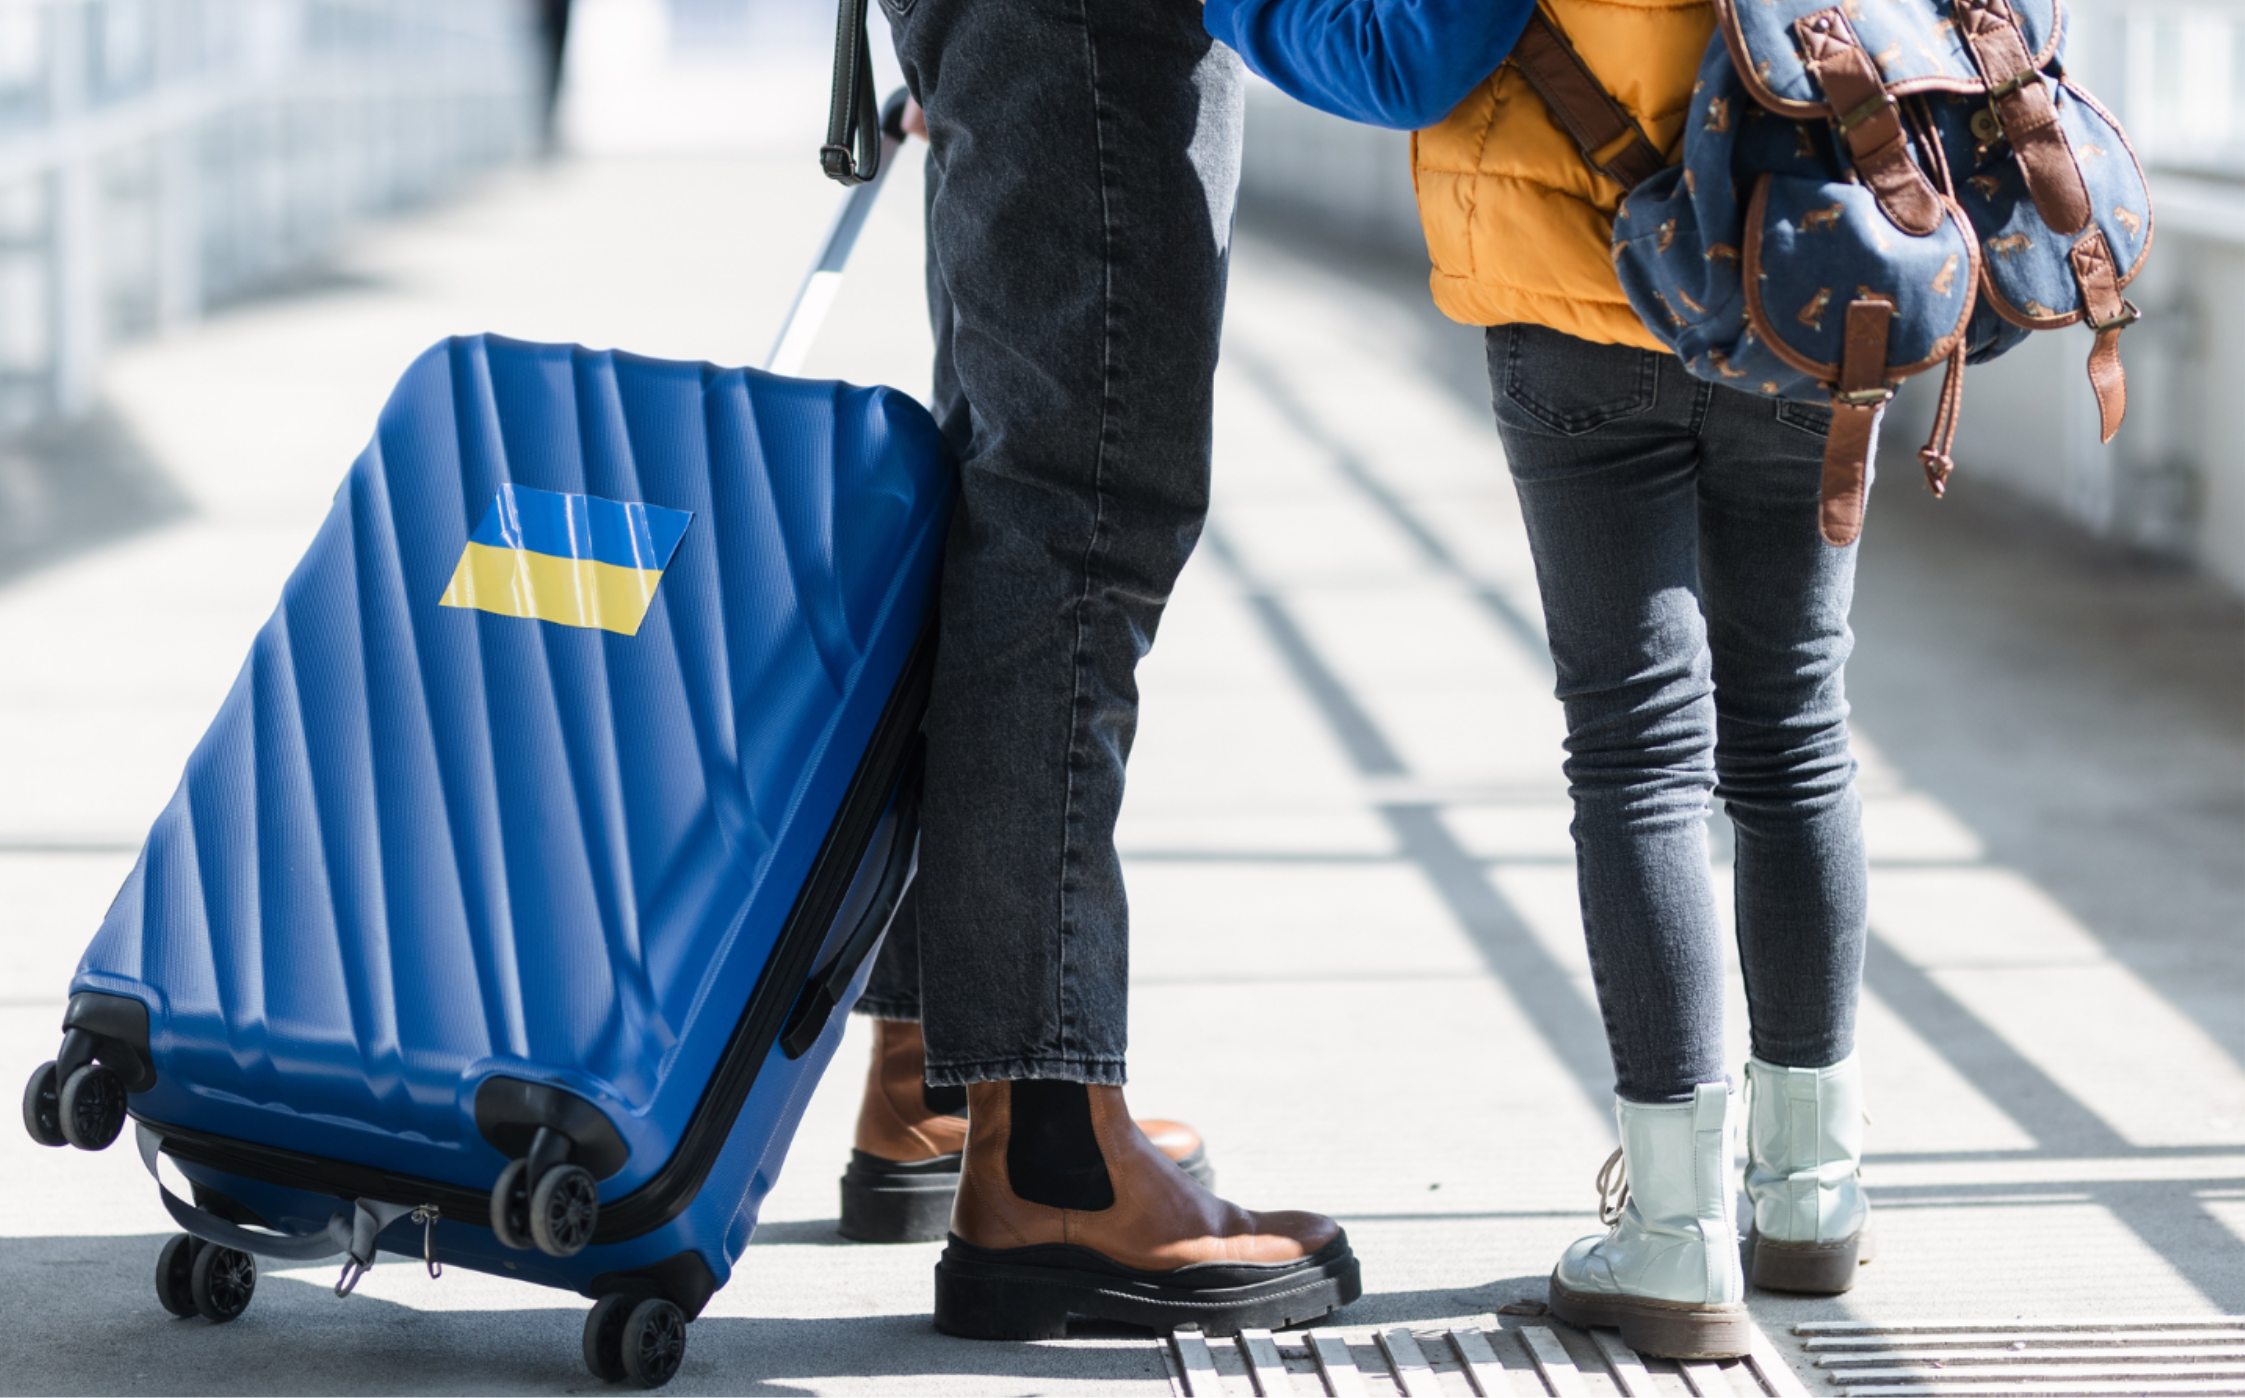 Kaksi ihmistä, joista toisella on reppu selässä ja toinen vetää sinistä matkalaukkua, jossa on Ukrainan lippu.